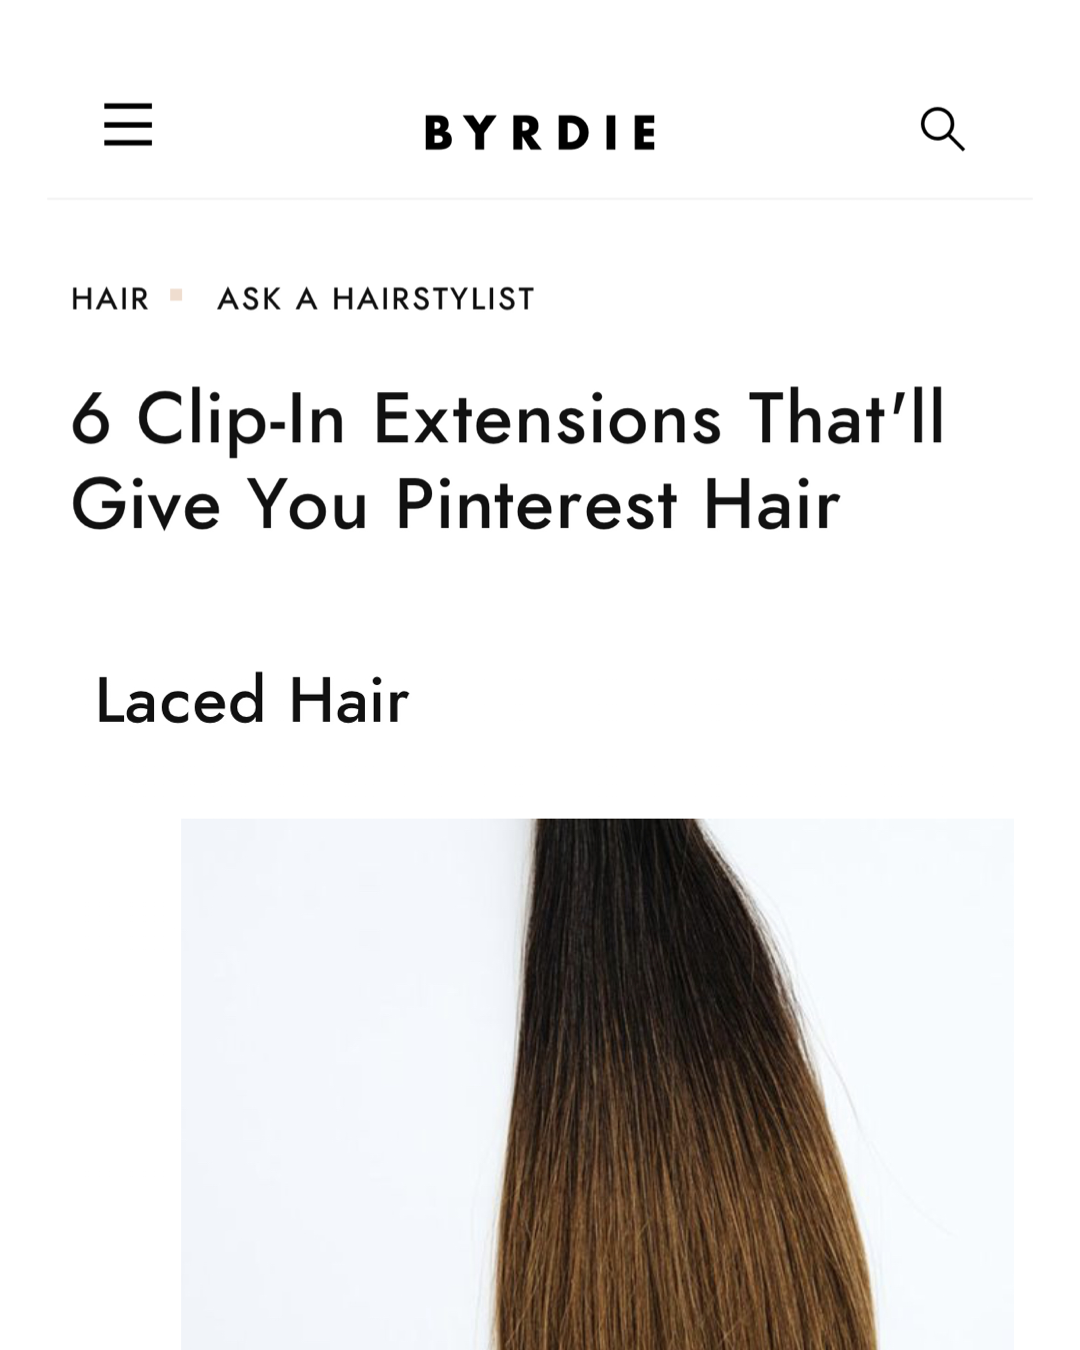 Featured: Laced Hair in Byrdie